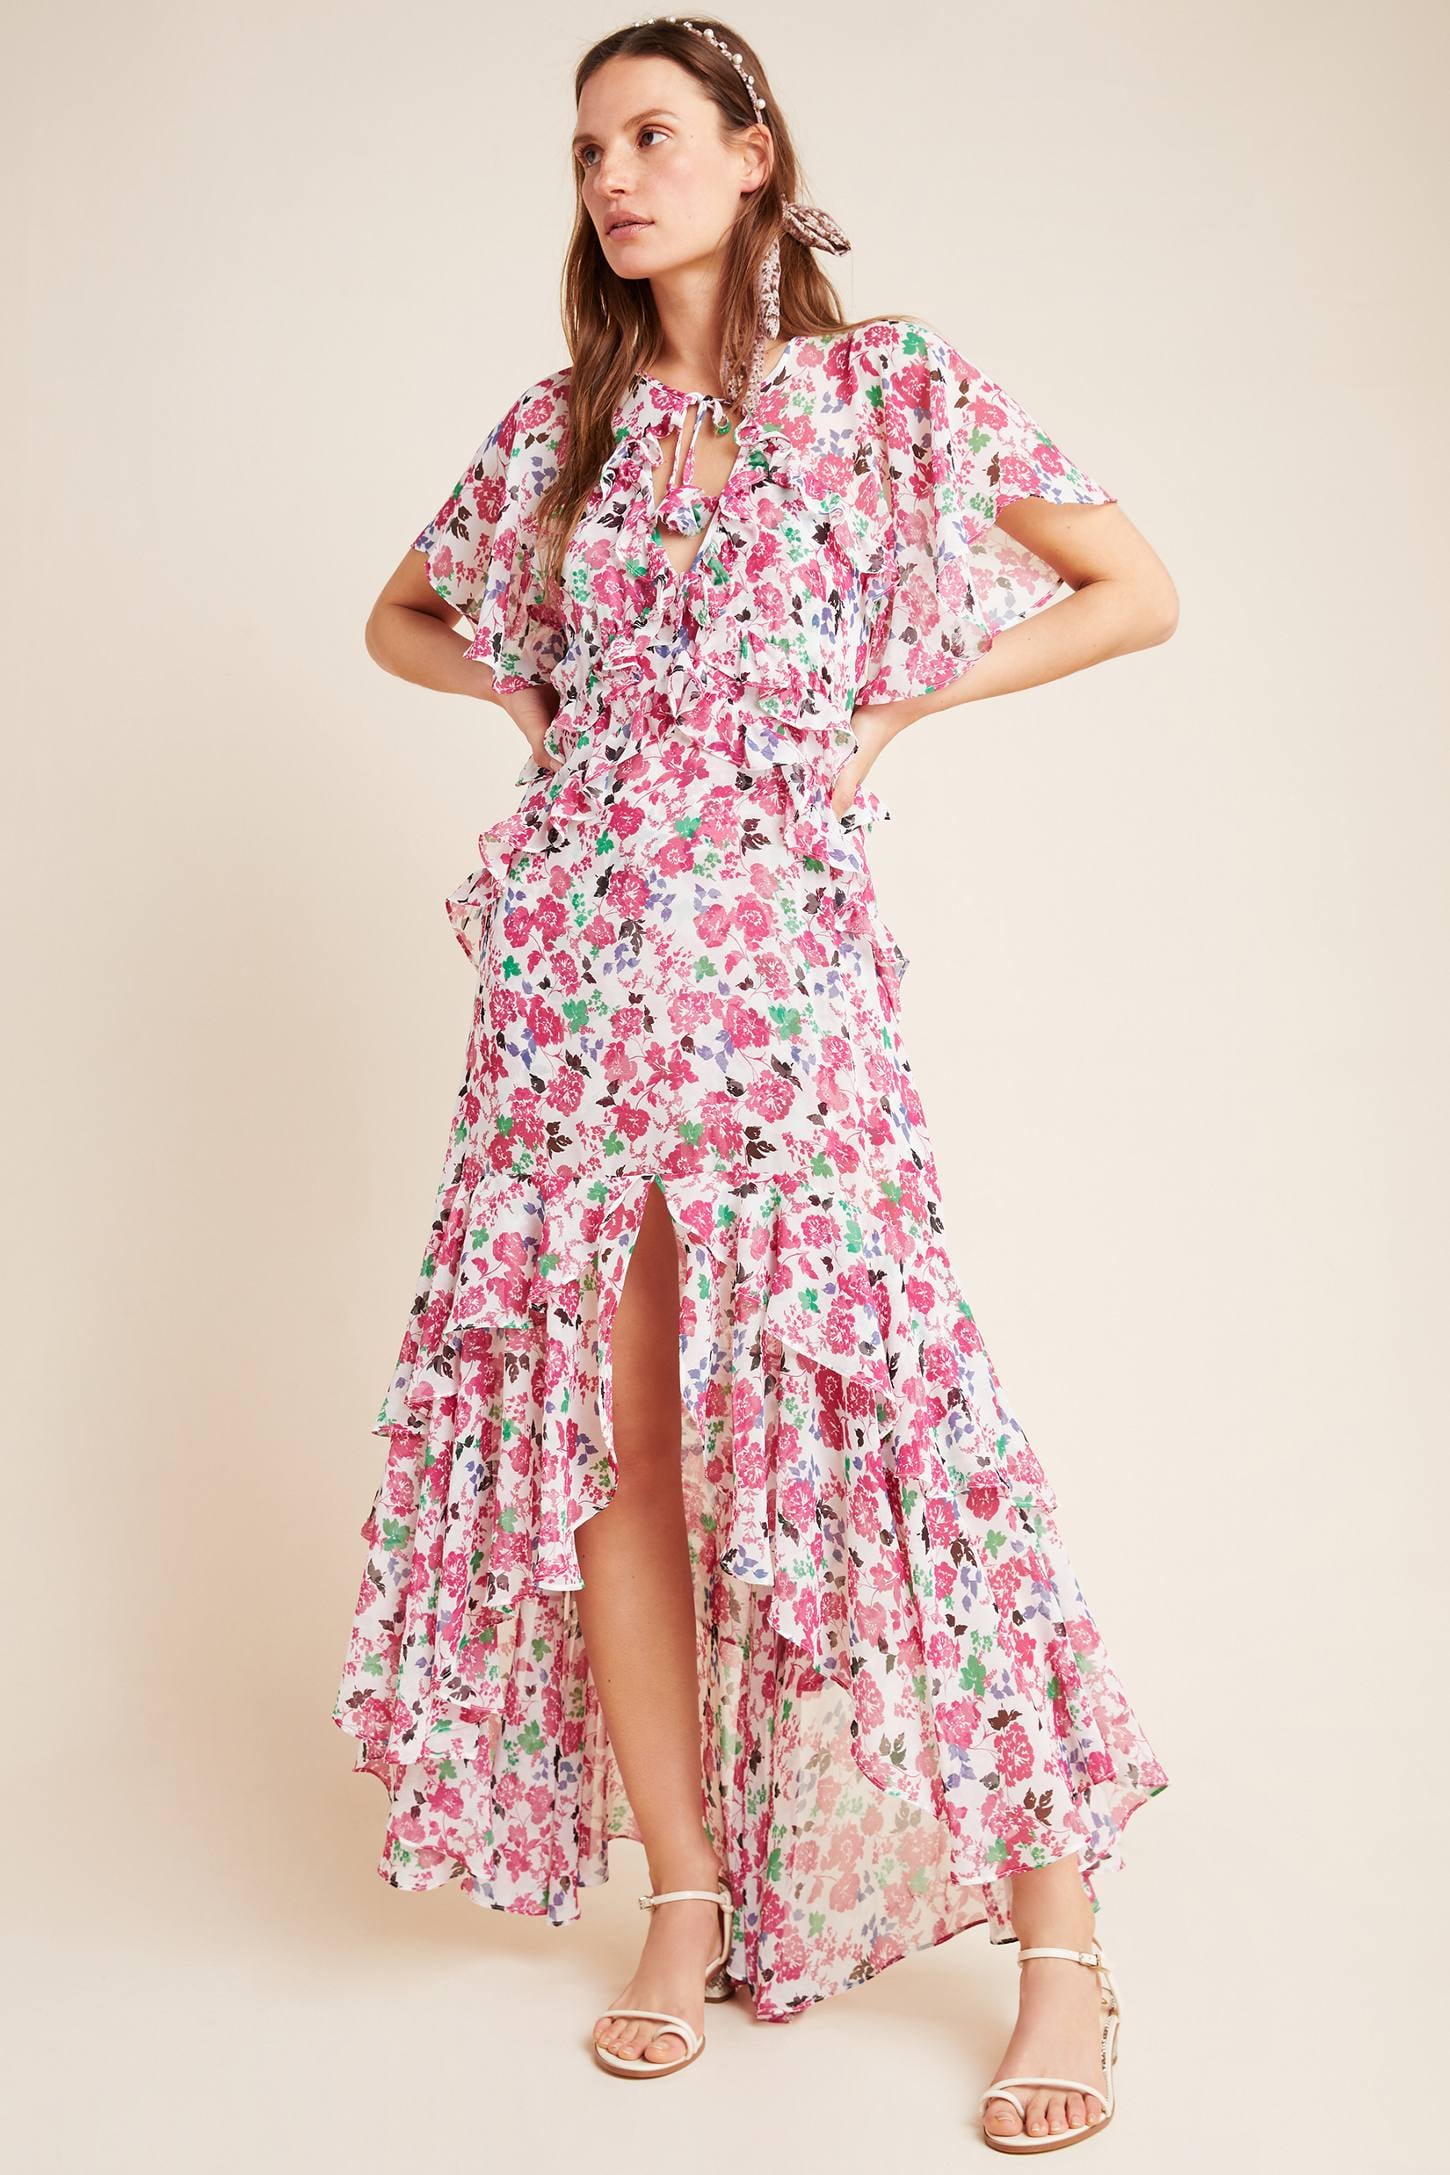 florals dresses